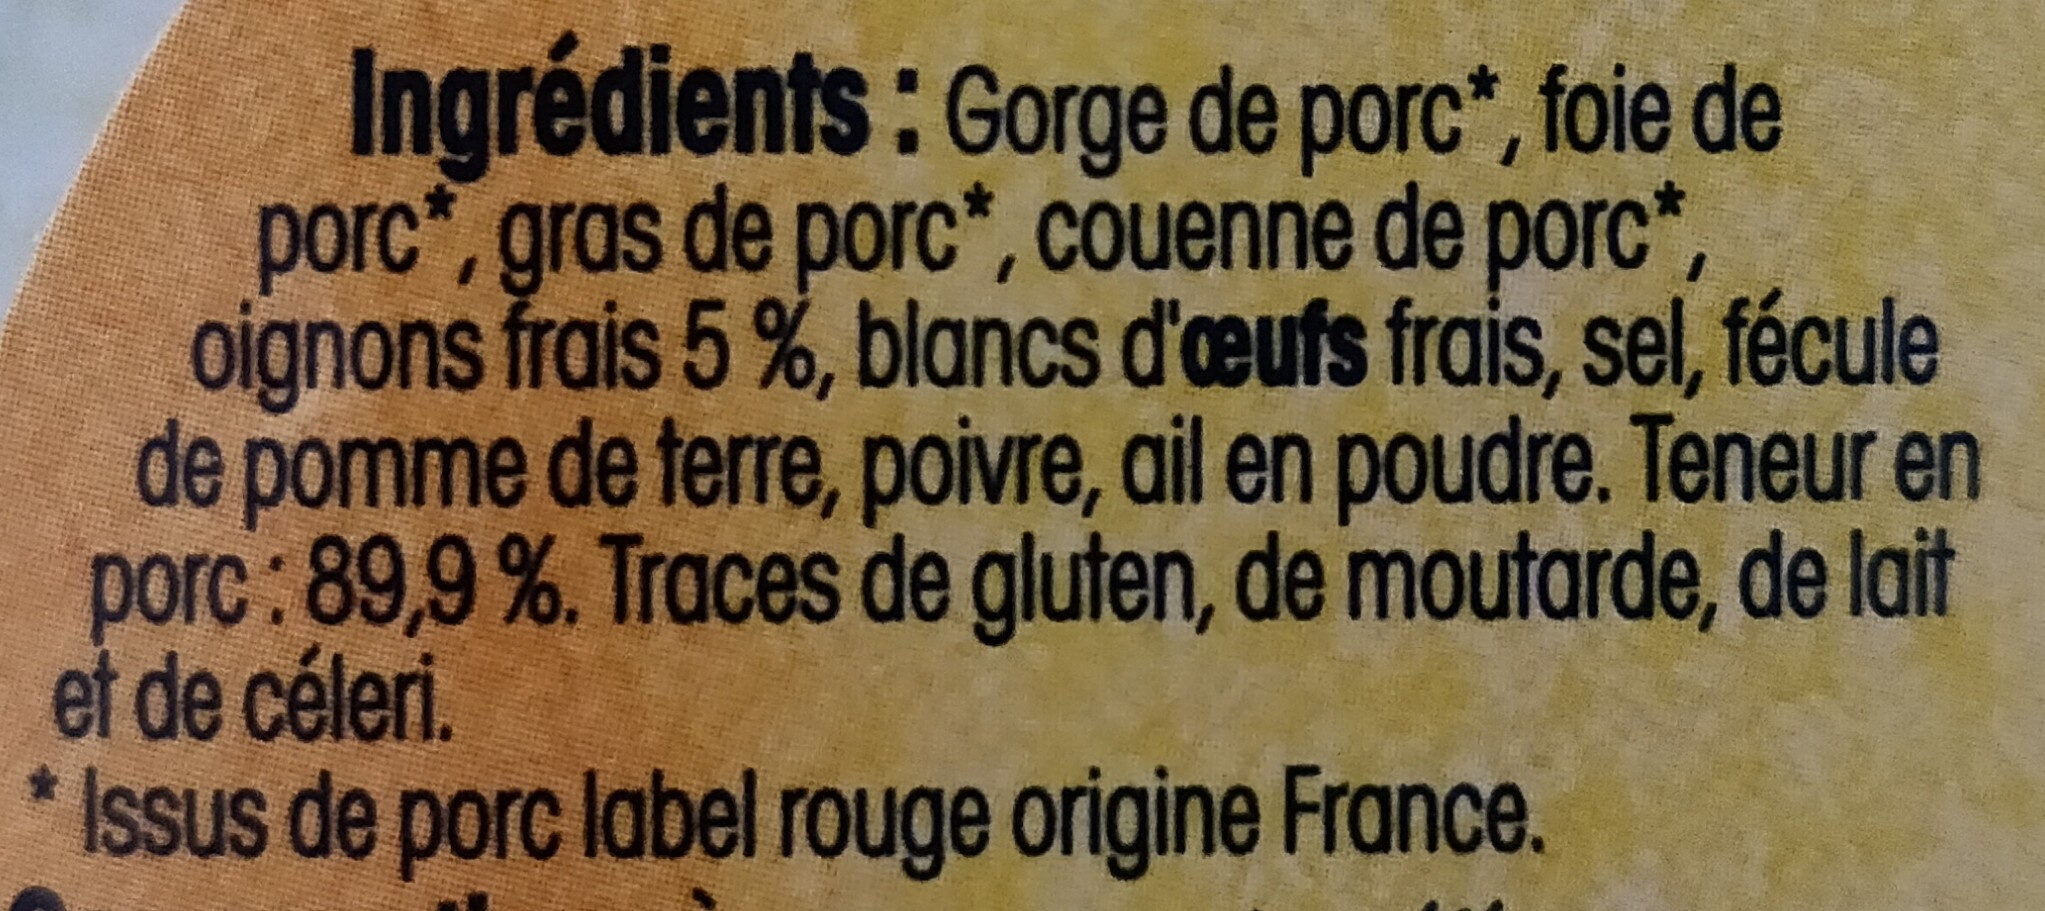 Paté de campagne au porc breton - Ingrédients